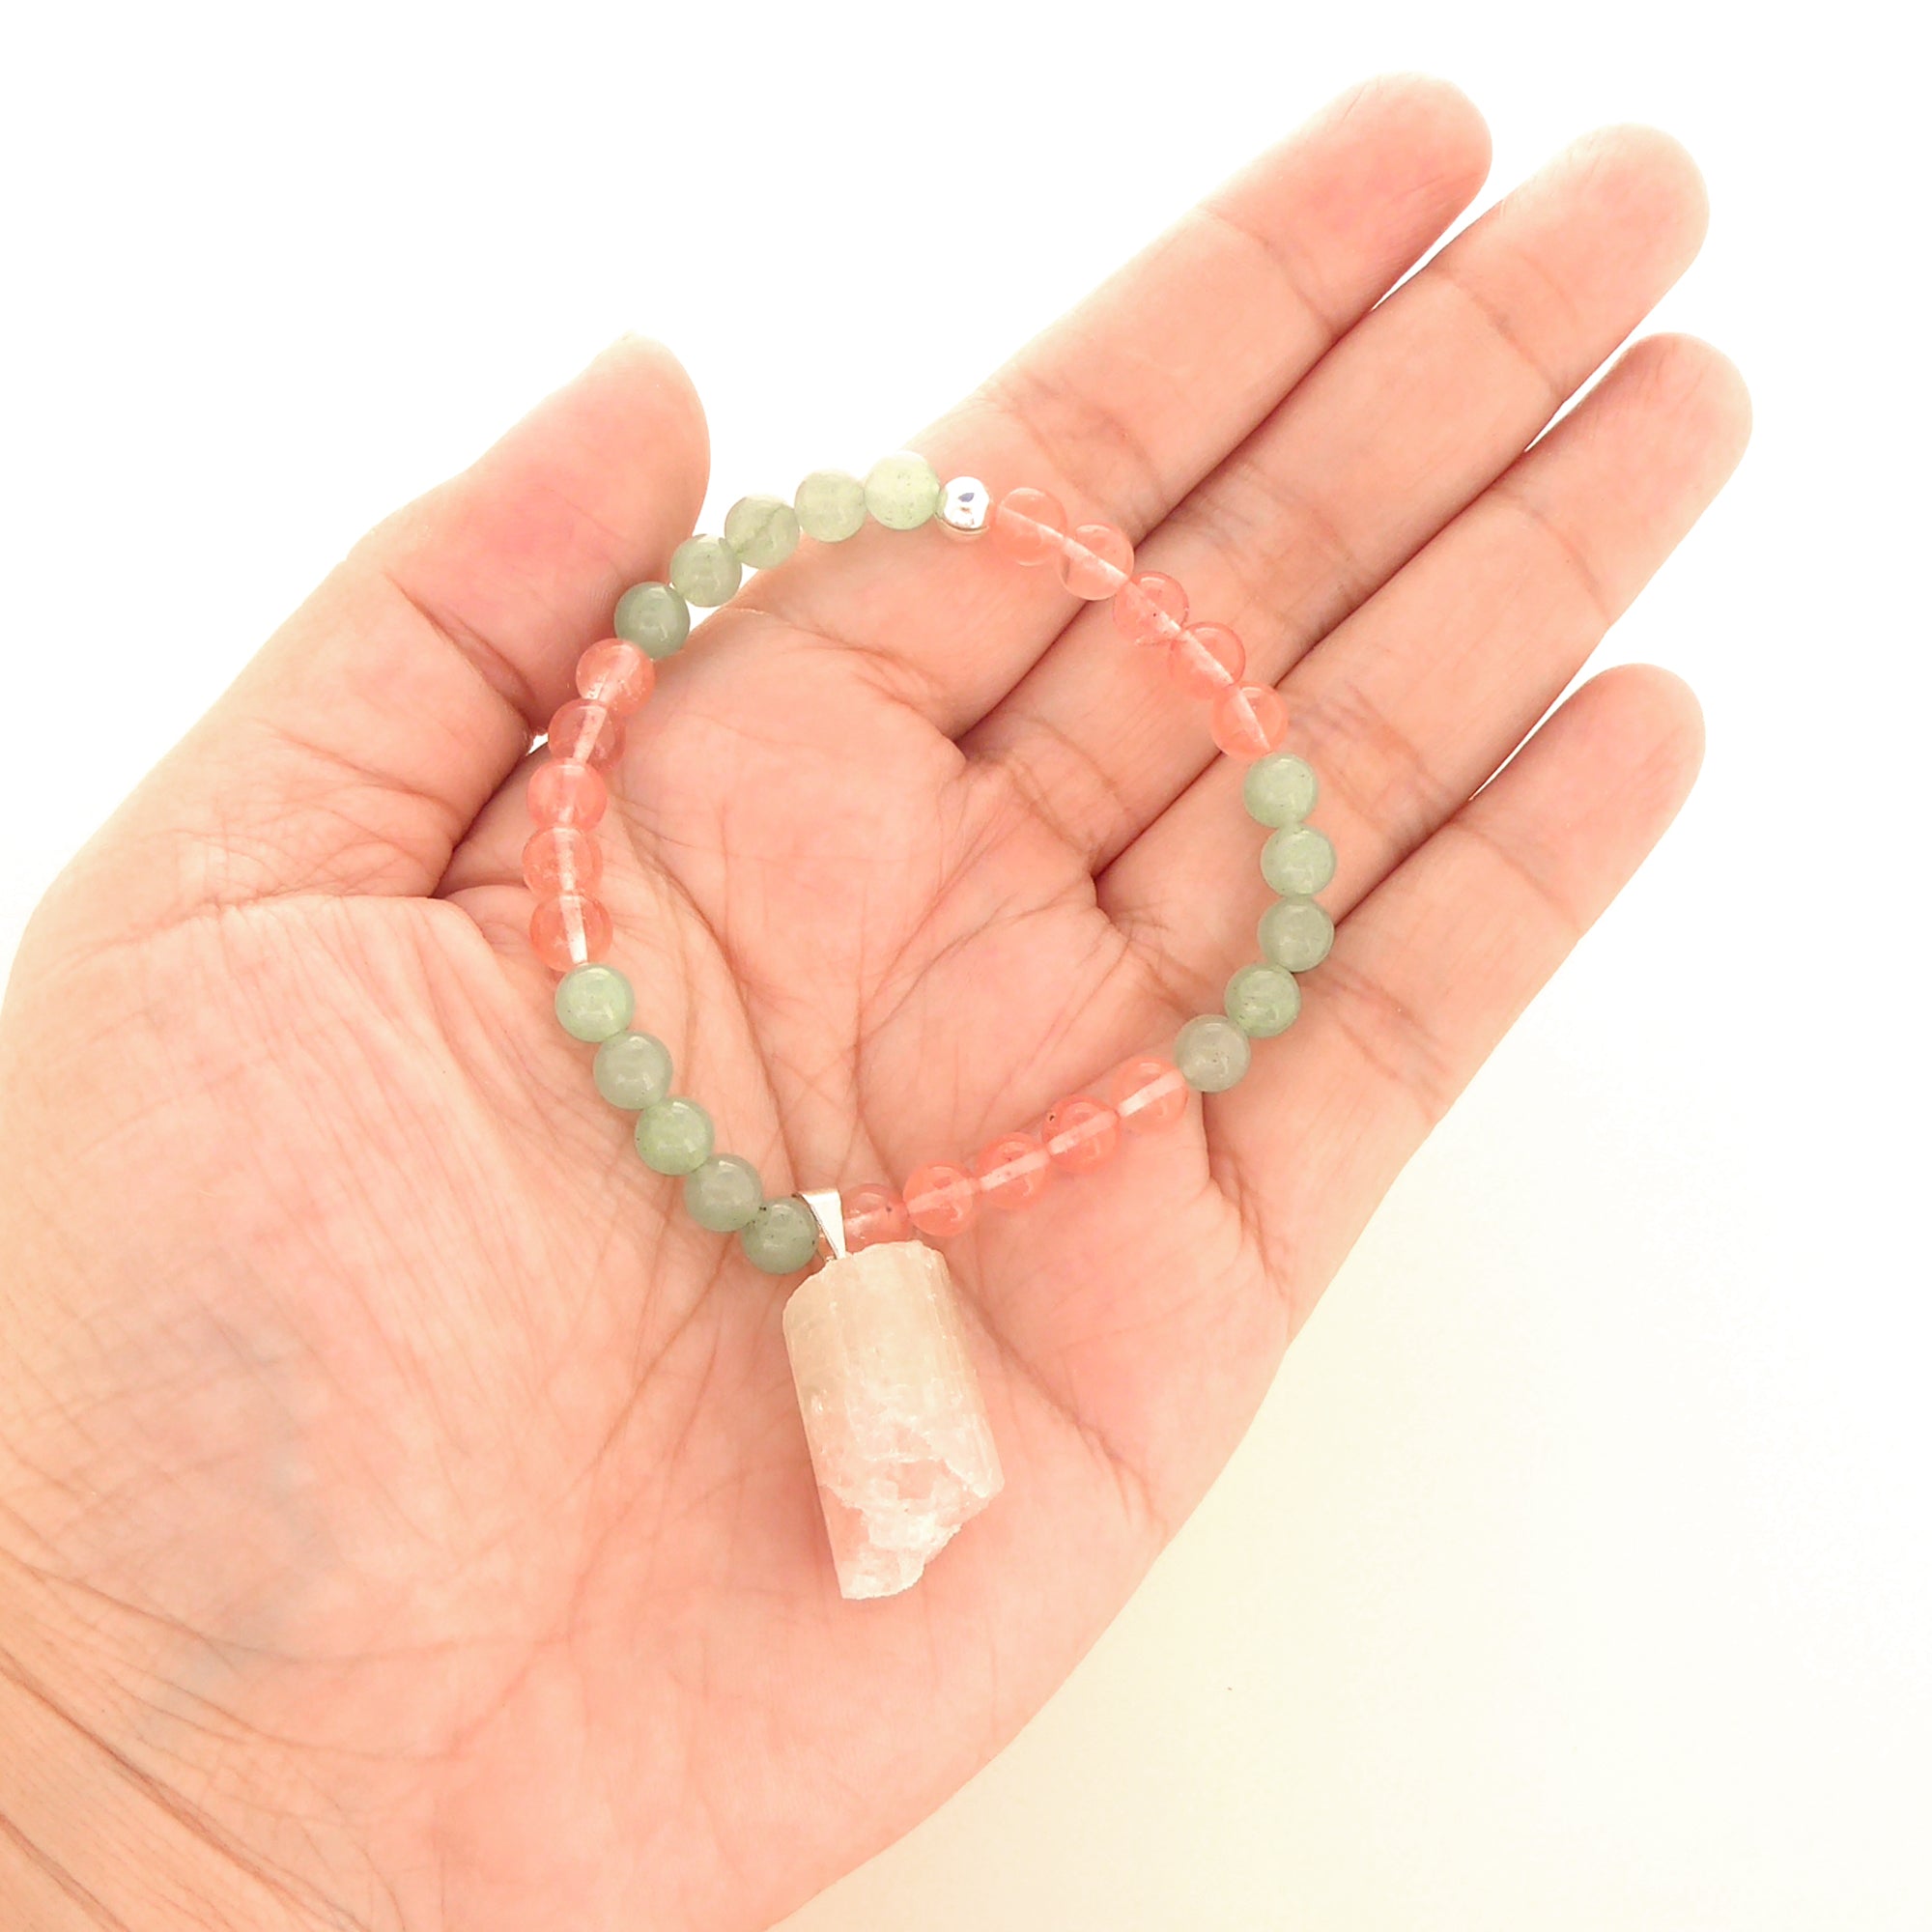 Watermelon tourmaline cherry quartz green aventurine bracelet by Jenny Dayco 5